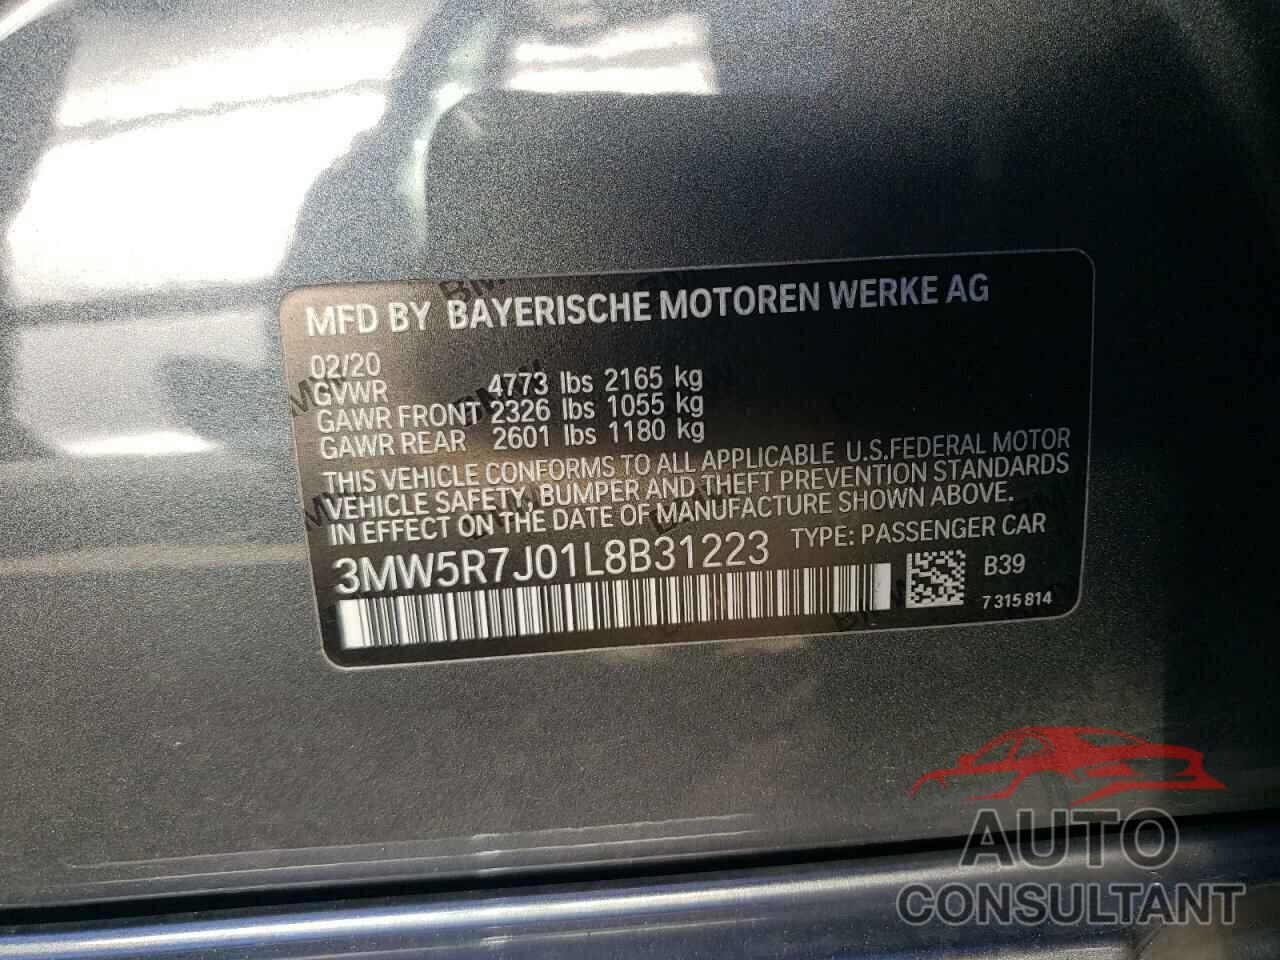 BMW 3 SERIES 2020 - 3MW5R7J01L8B31223